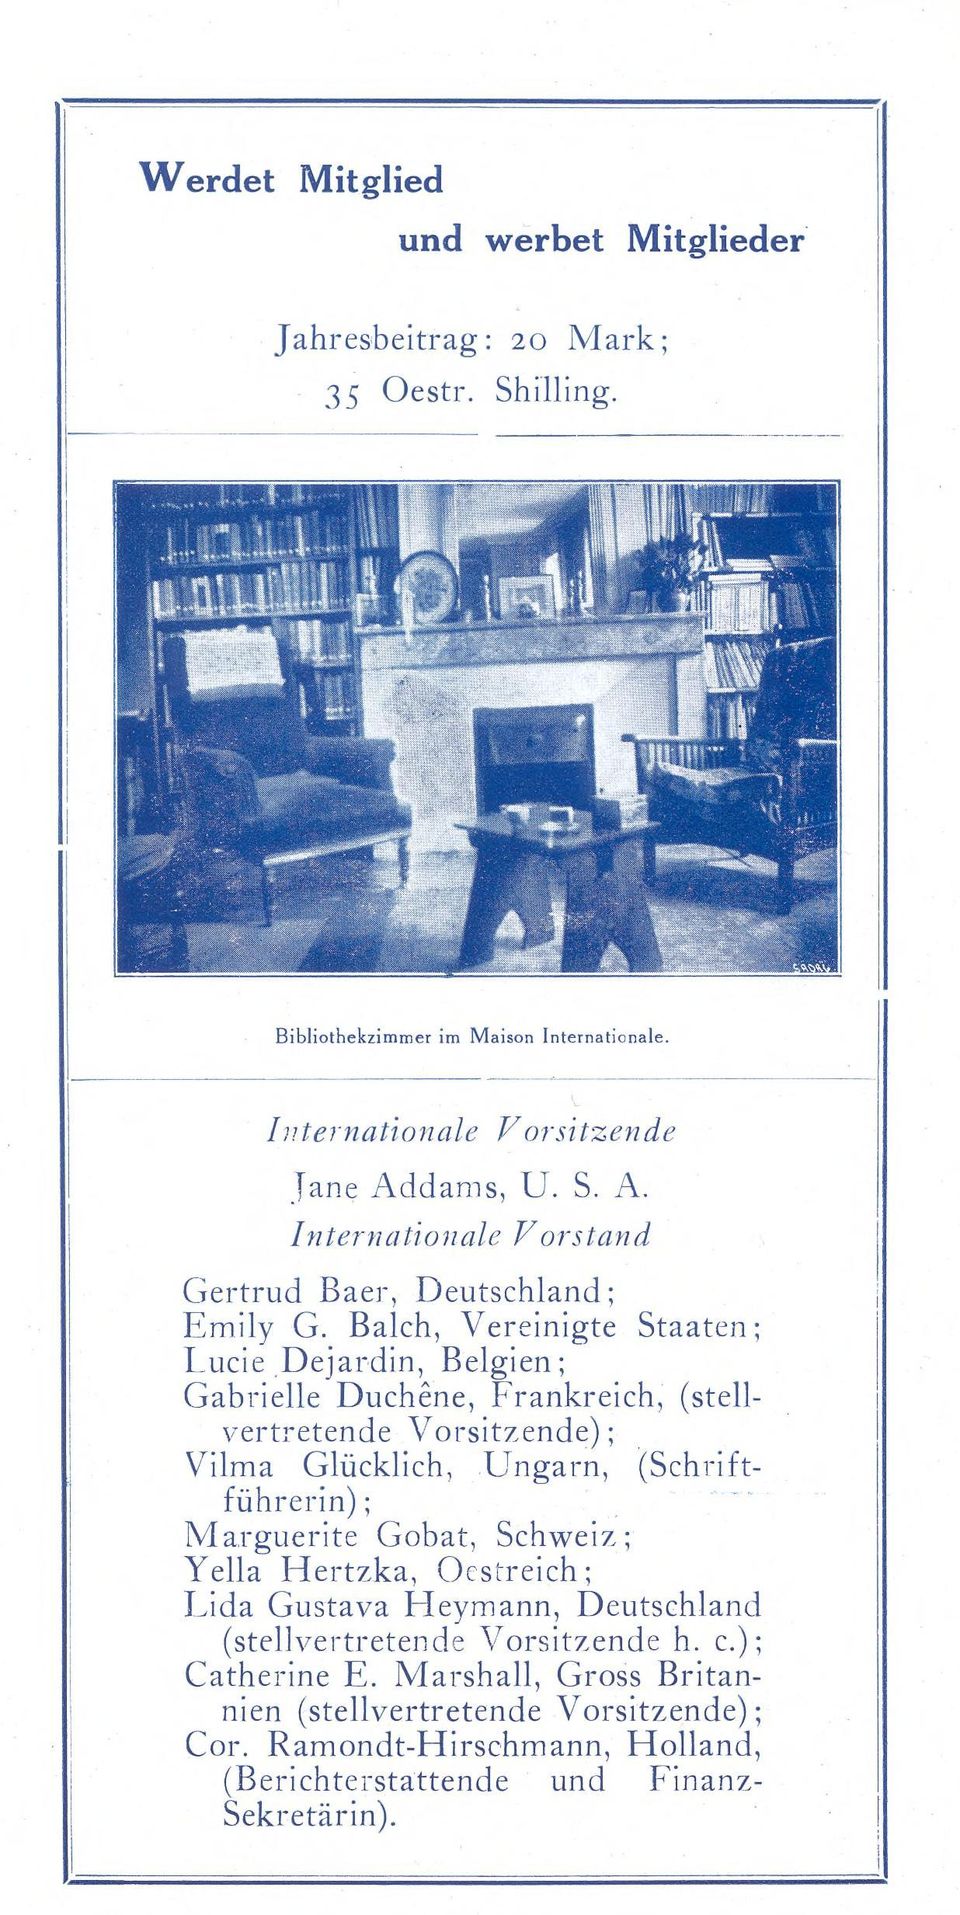 Balch, Vereinigte Staaten: Lucie Dejardin, Belgien; Gabrielle Duchêne, Frankreich, (stellvertretende Vorsitzende); Vilma Glücklich, Ungarn, (Schriftführerin) ;